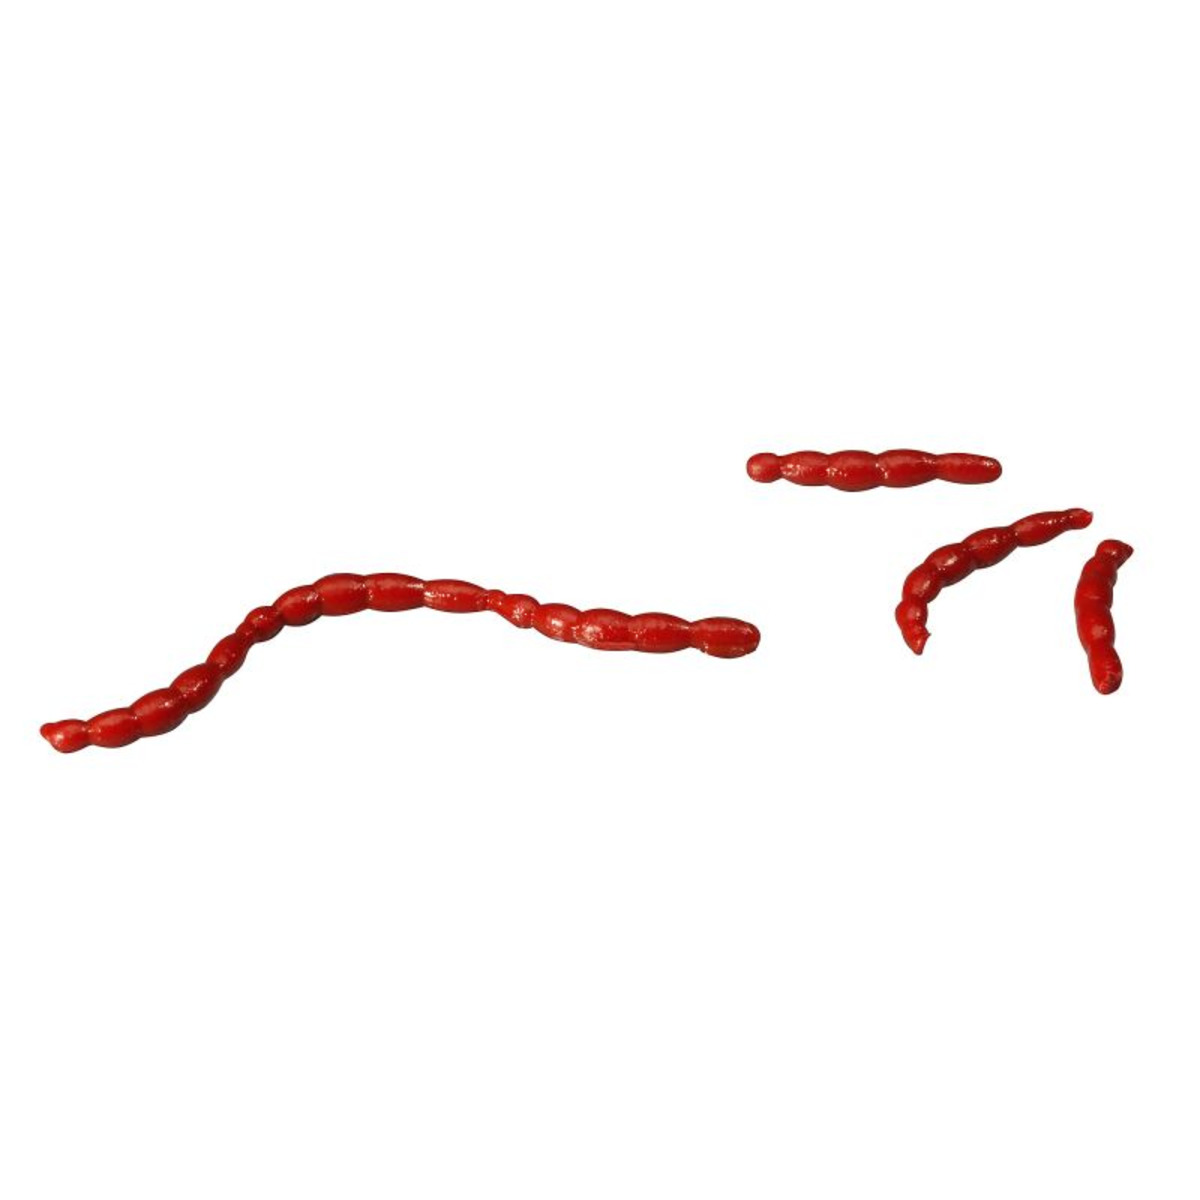 Berkley Gulp! Alive Bloodworm - 59 g - Red